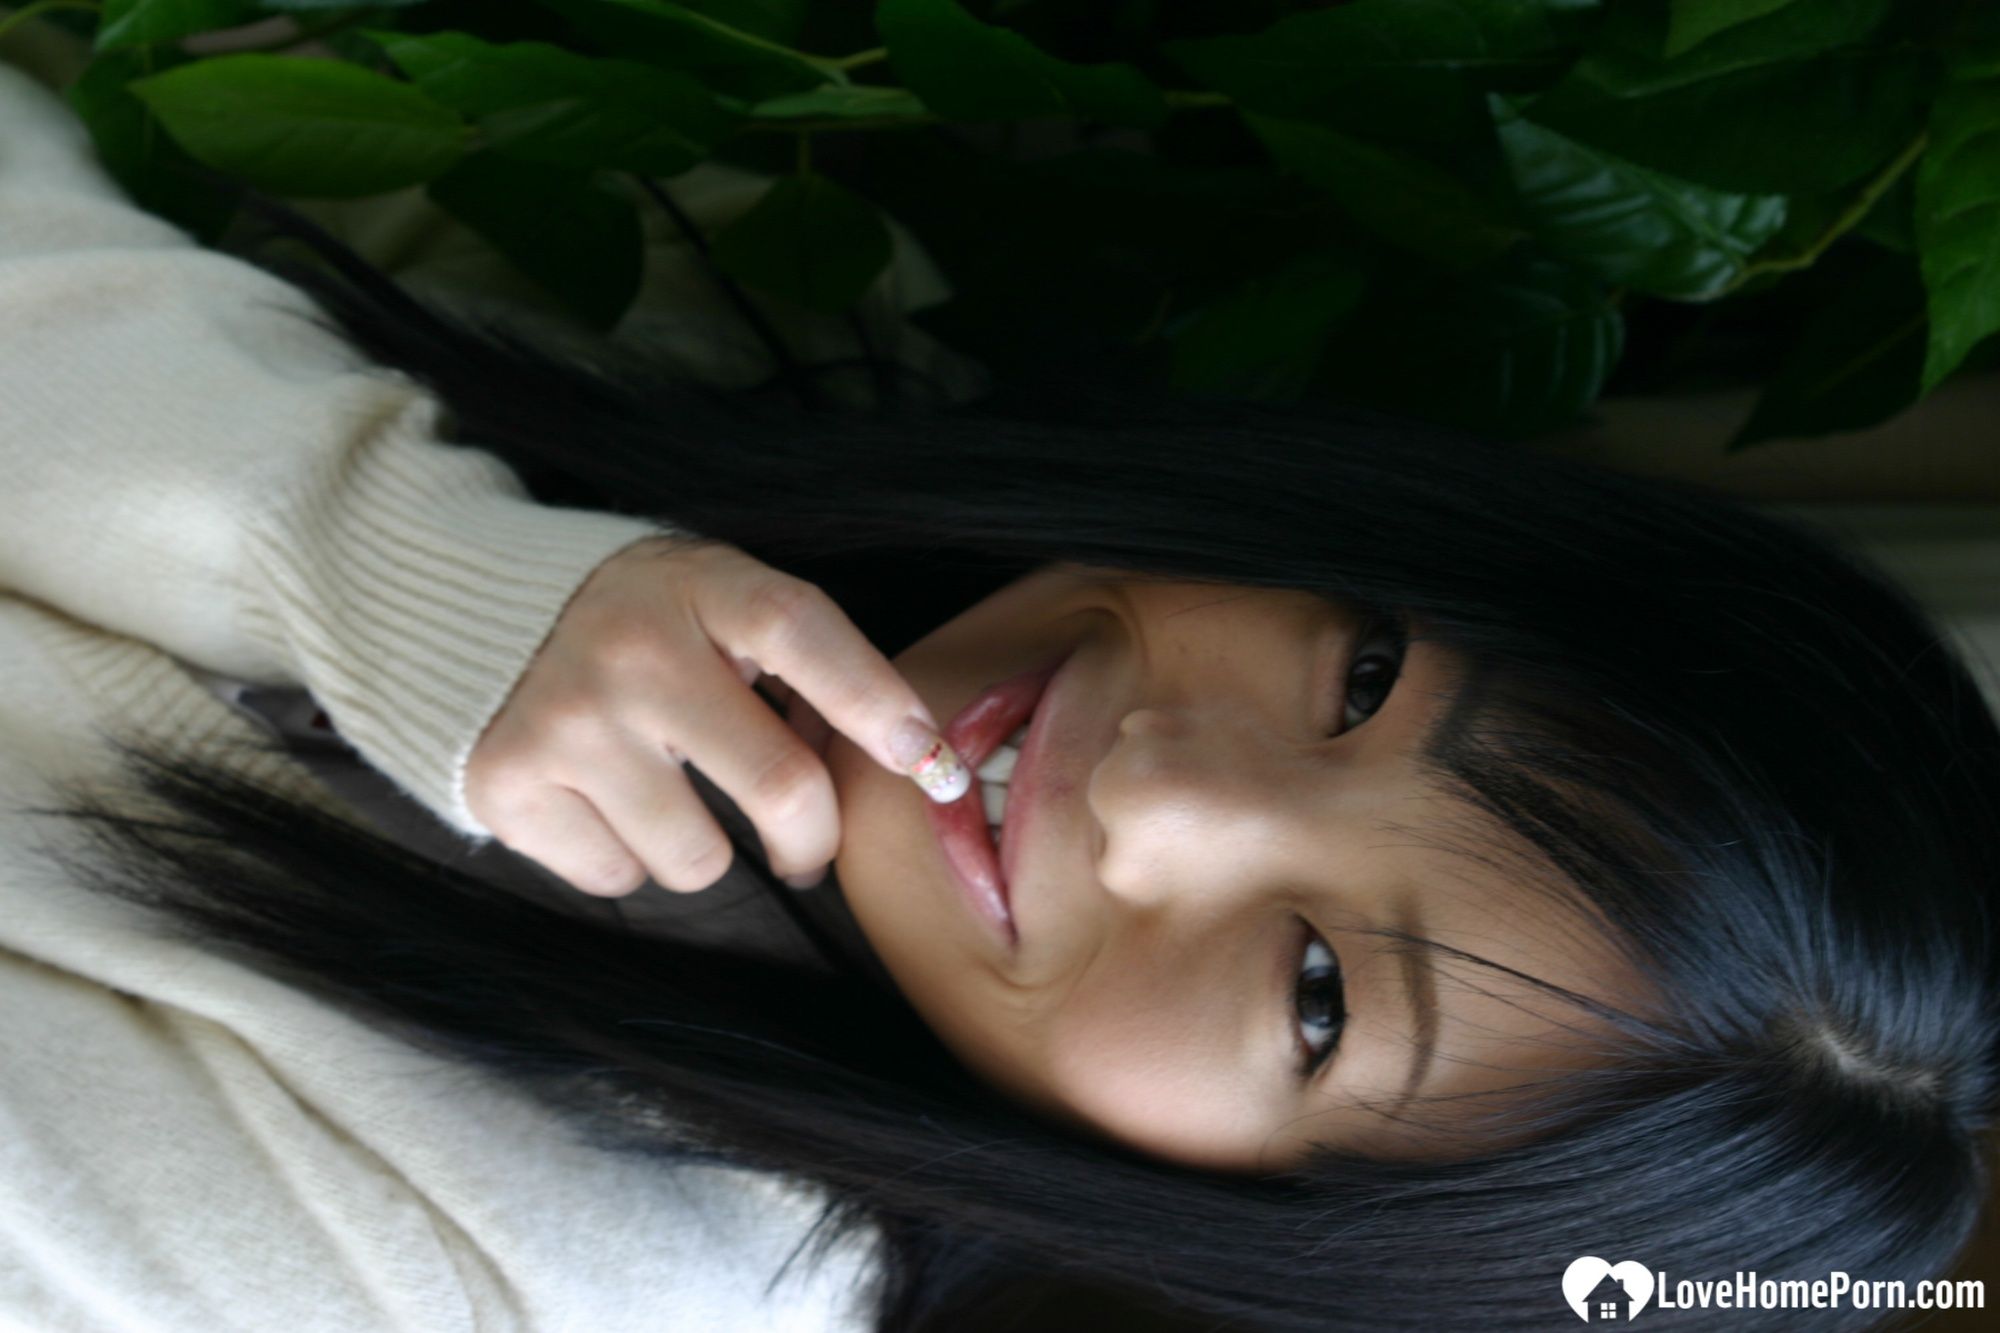 Asian schoolgirl looks for some online exposure #16